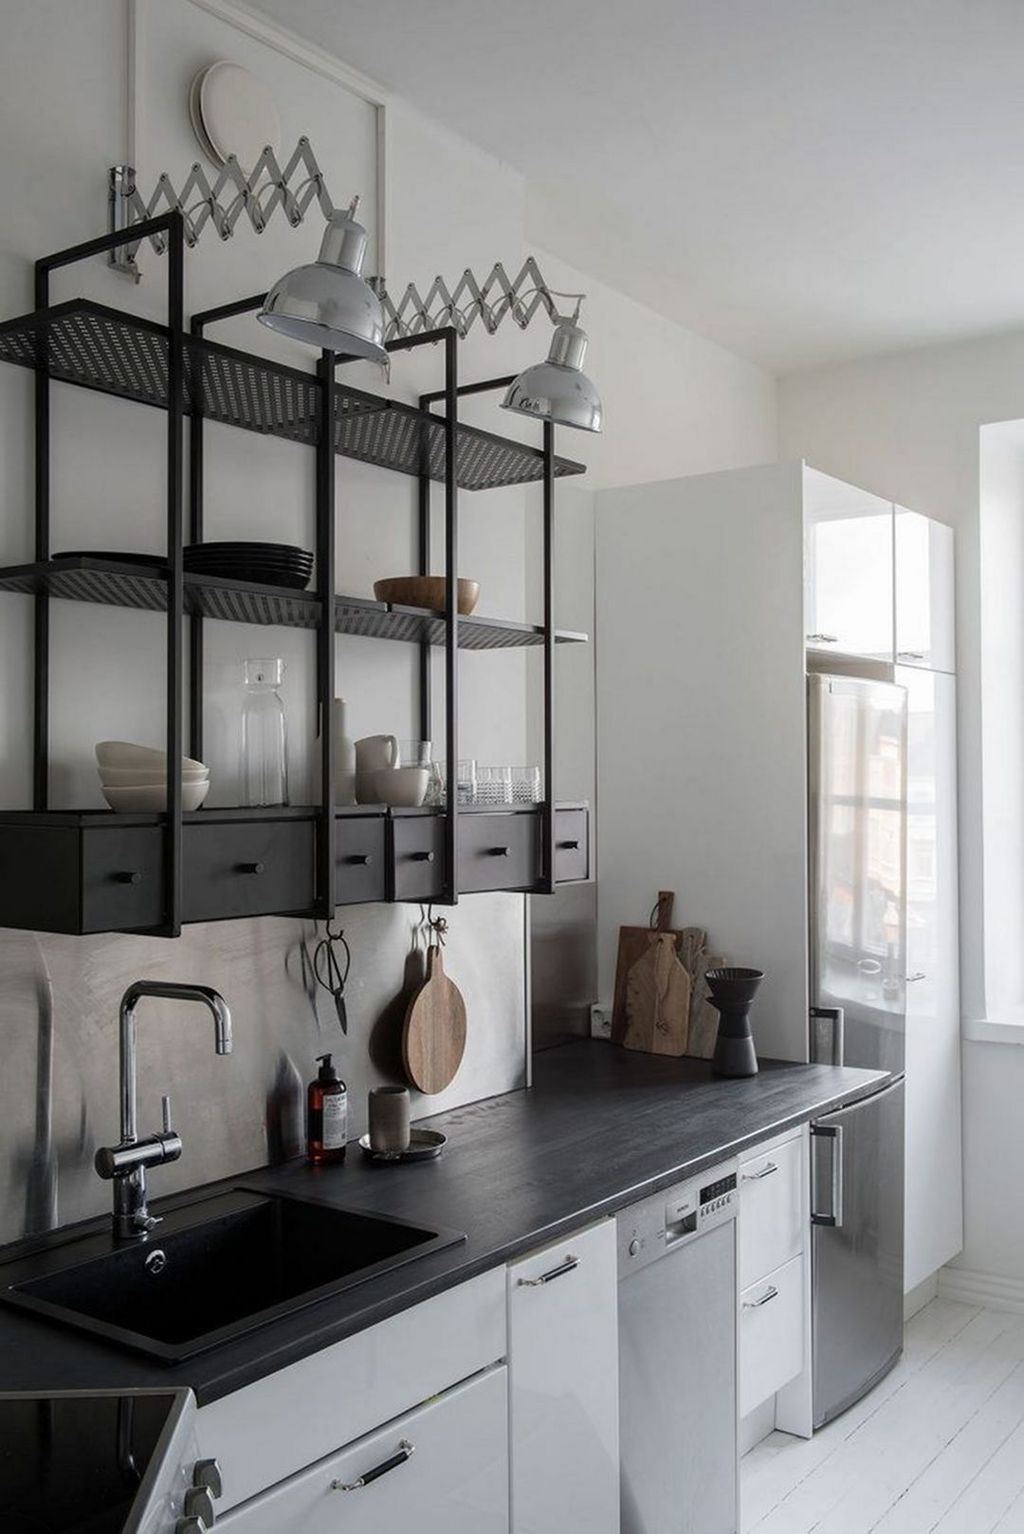 Wonderful Industrial Kitchen Shelf Design Ideas To Organize Your Kitchen42